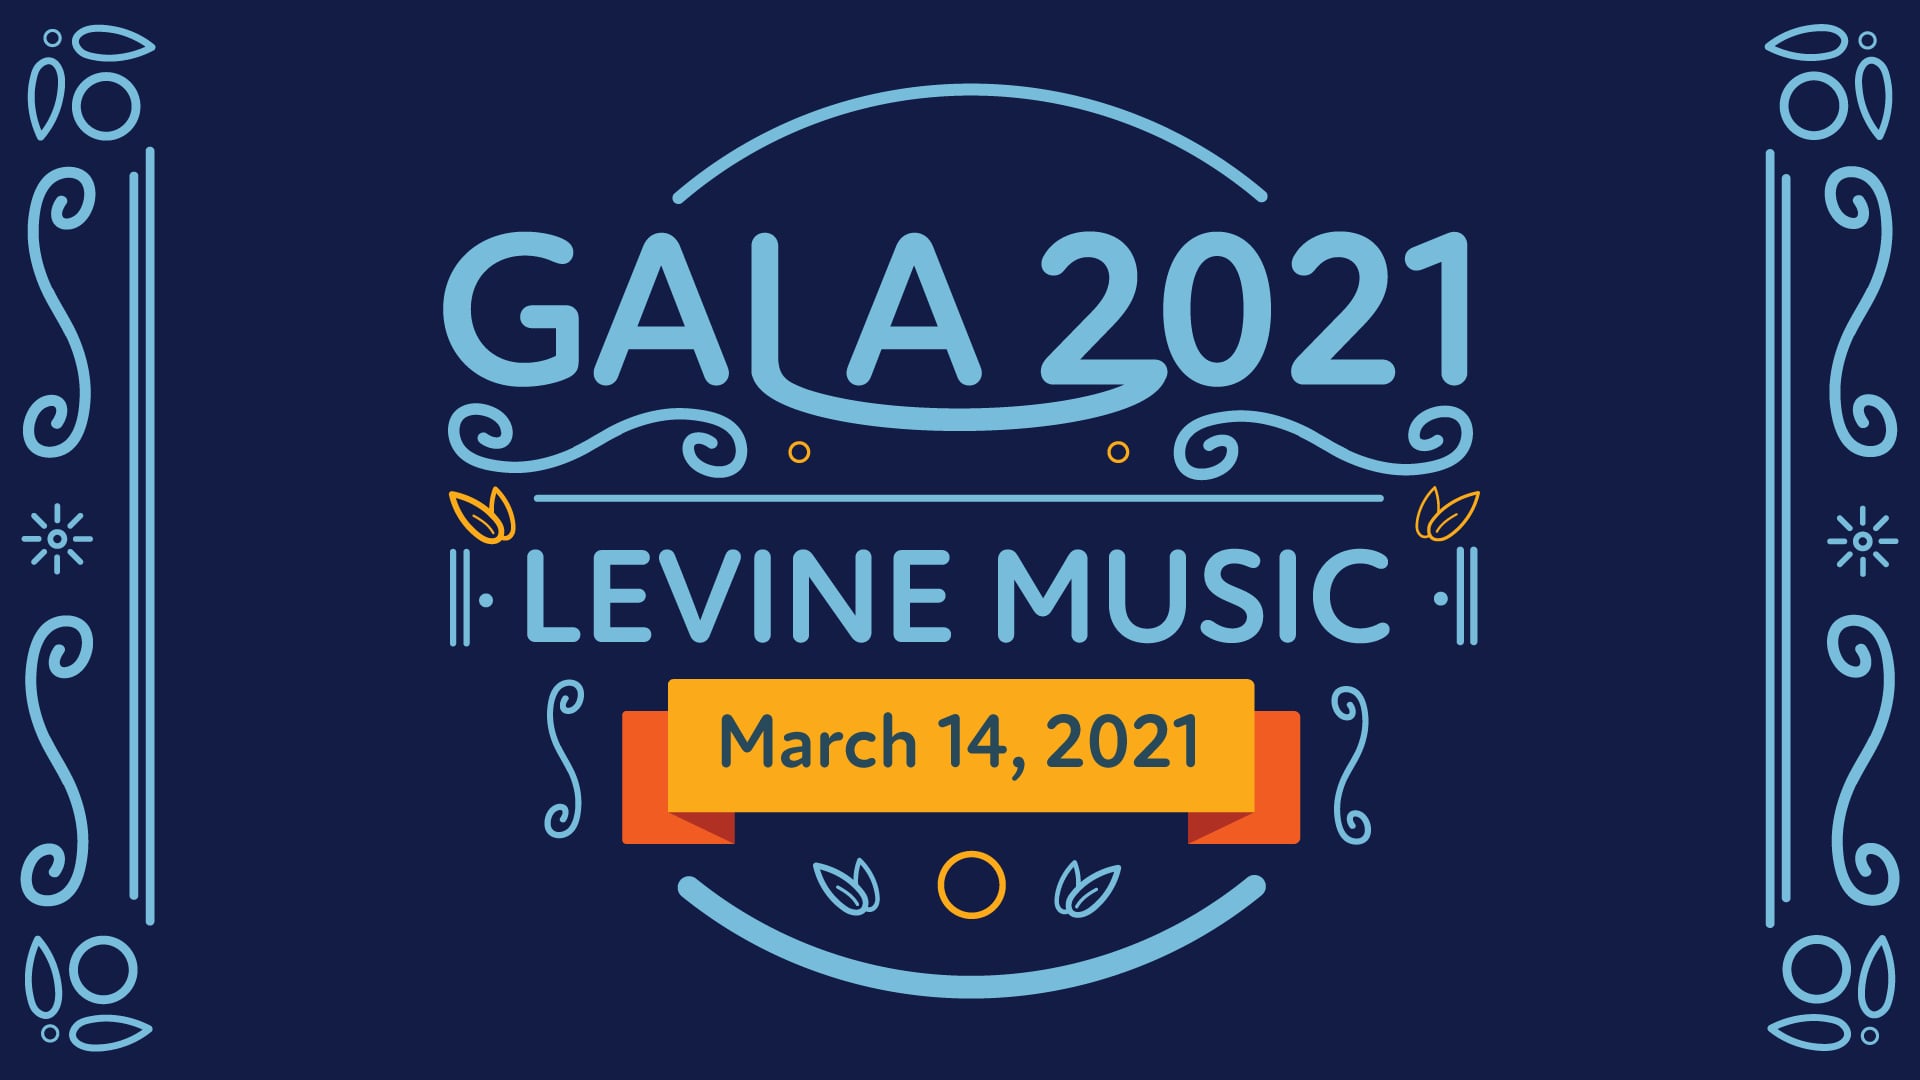 Levine Music Gala 2021 on Vimeo